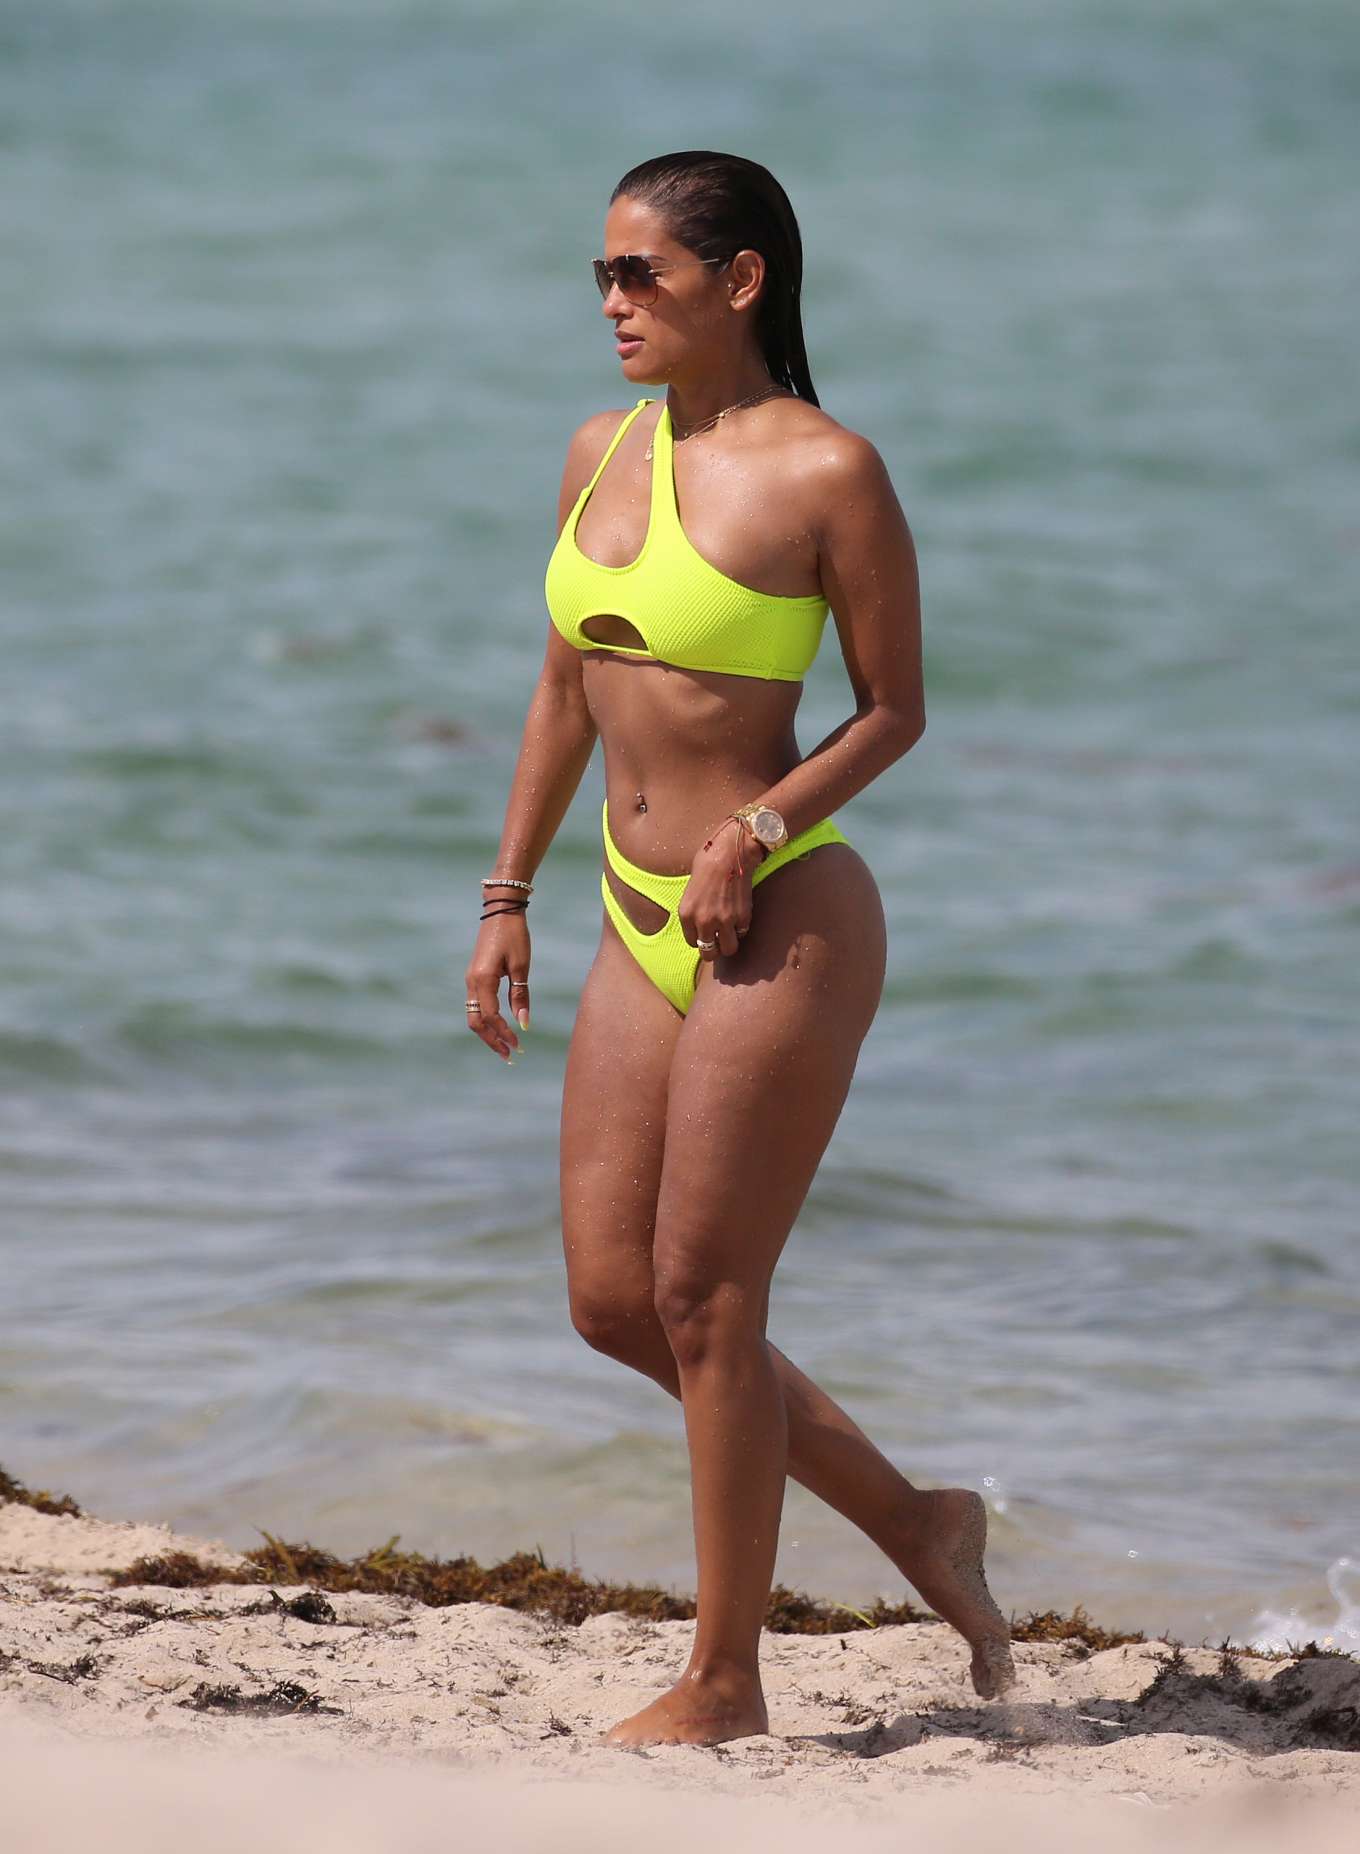 Rocsi Diaz in Neon Yellow Bikini on the beach in Miami. 